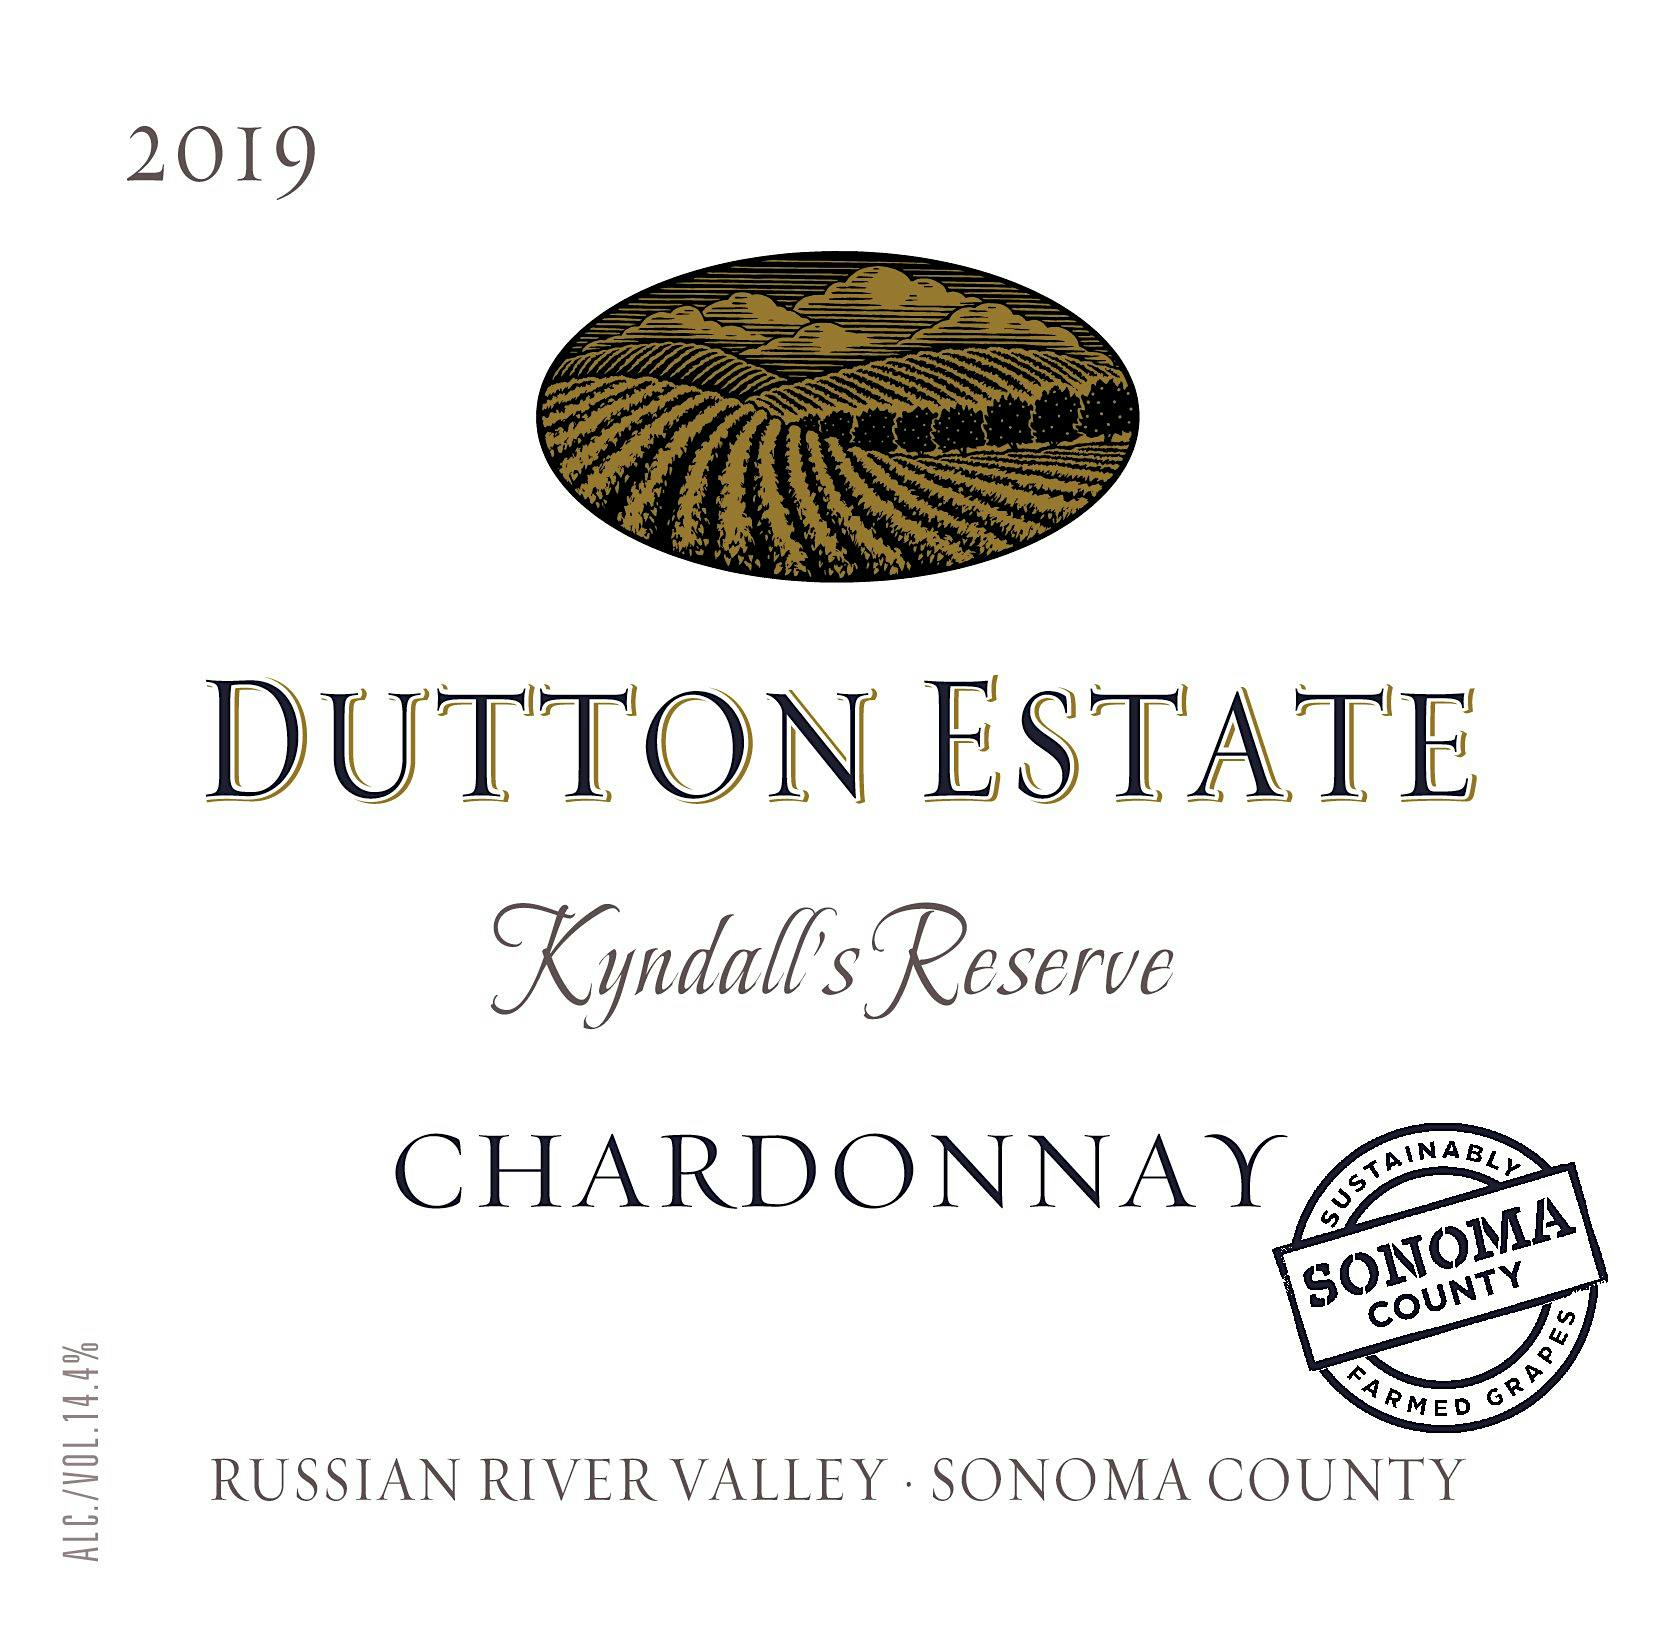 Label for Dutton Estate